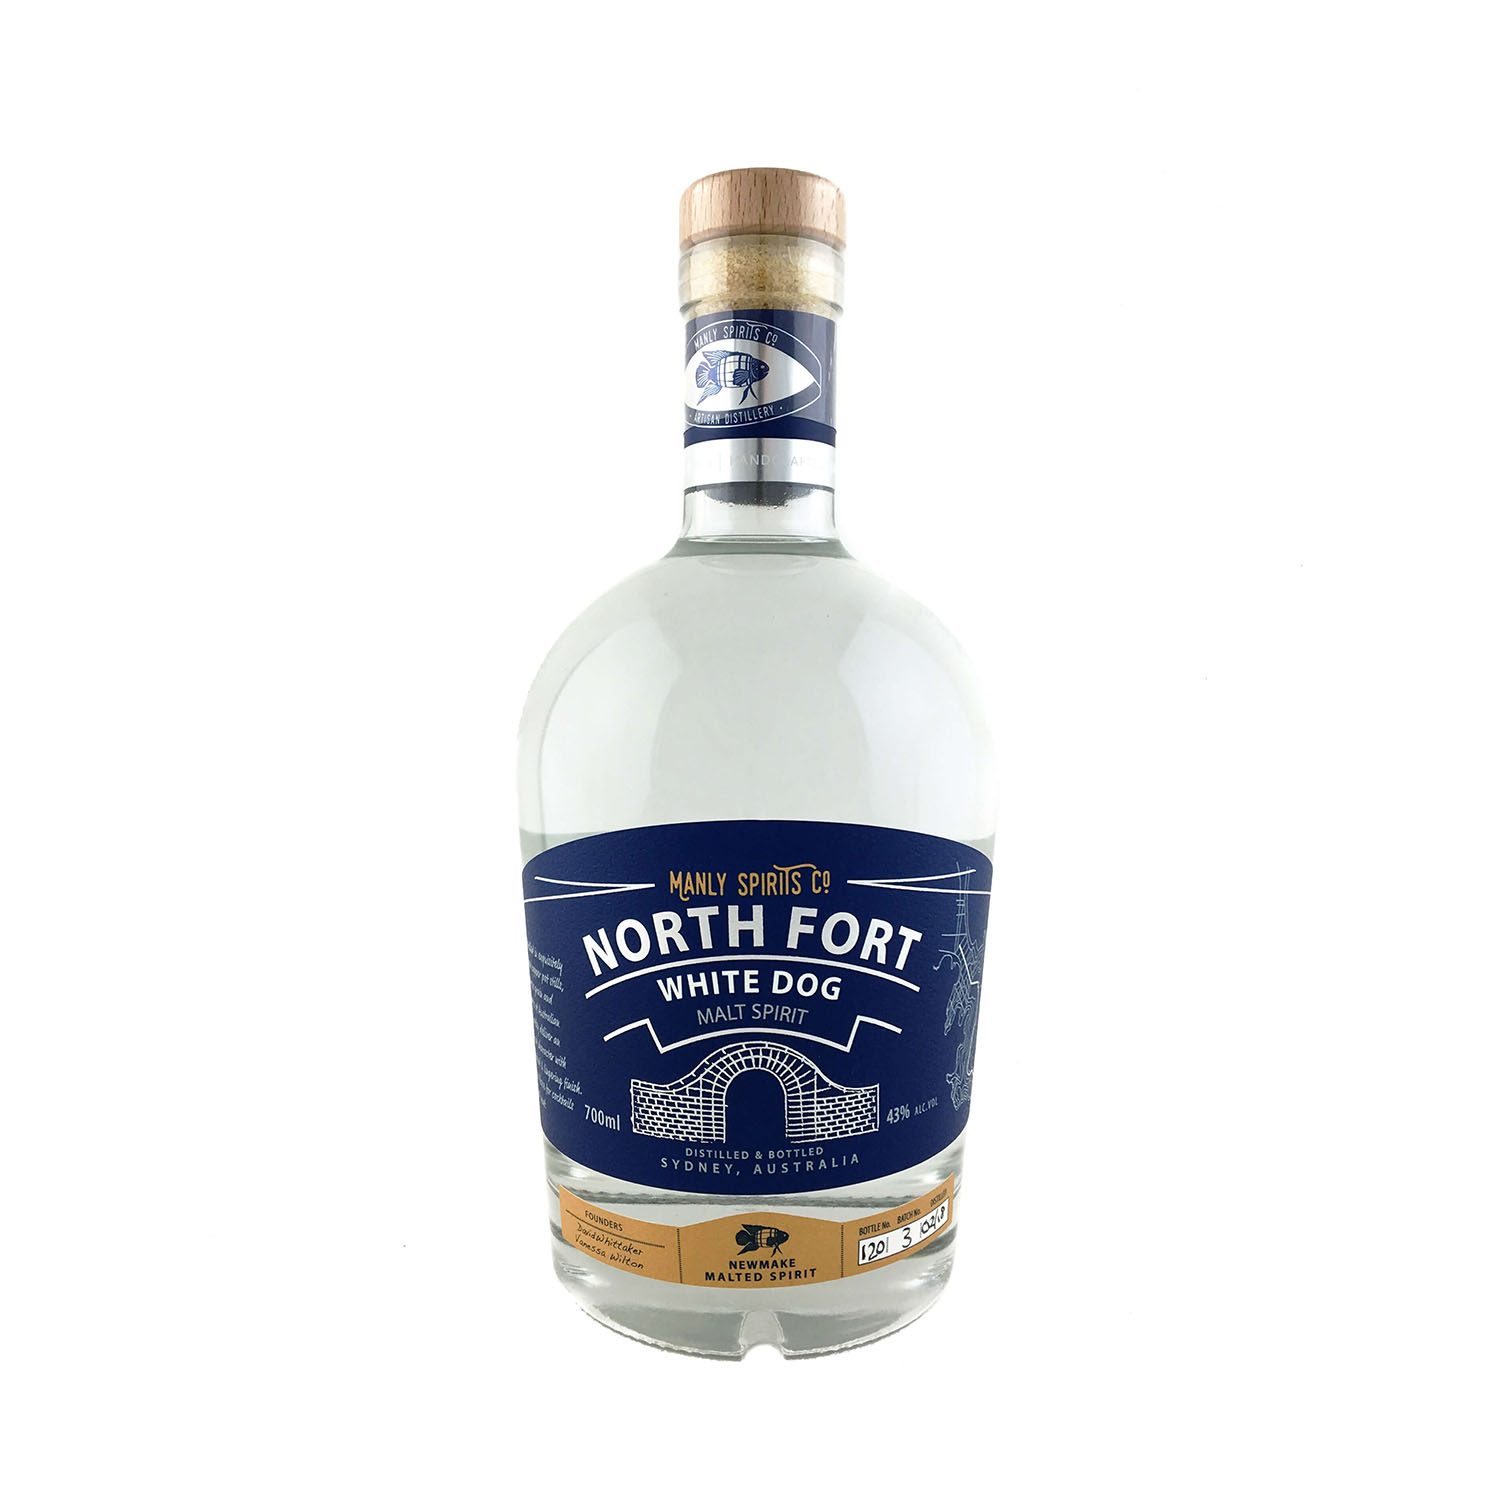 North Fort White Dog Australian Malt Spirit, Australian Whisky, The Old Barrelhouse